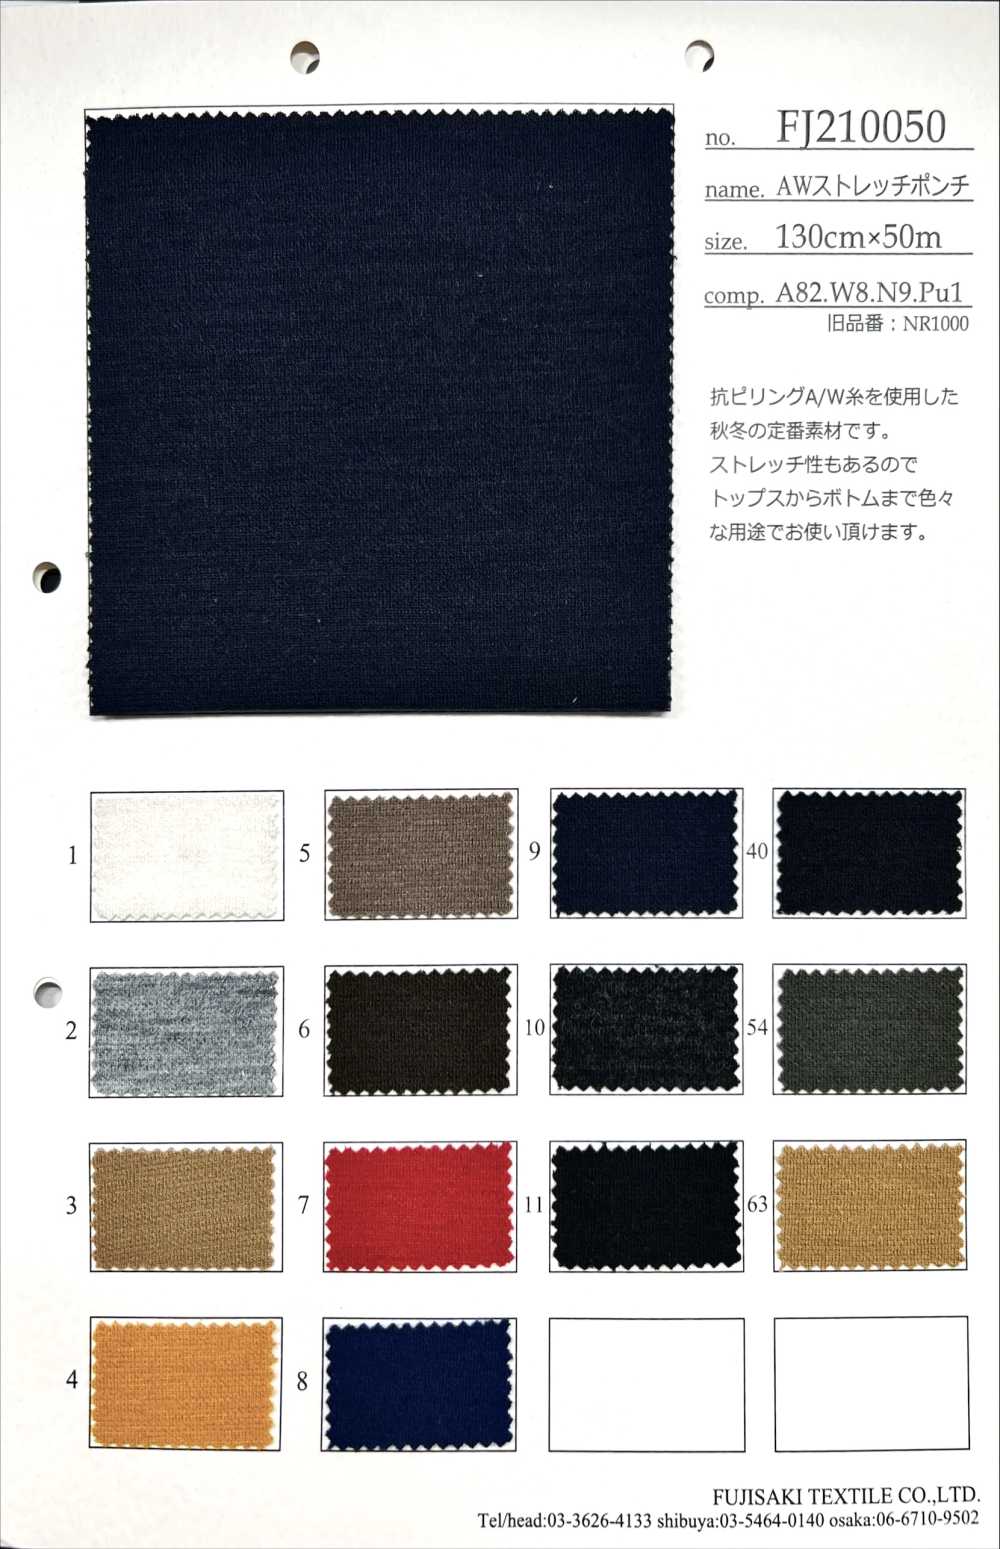 FJ210050 AW Tratto Ponte[Tessile / Tessuto] Fujisaki Textile